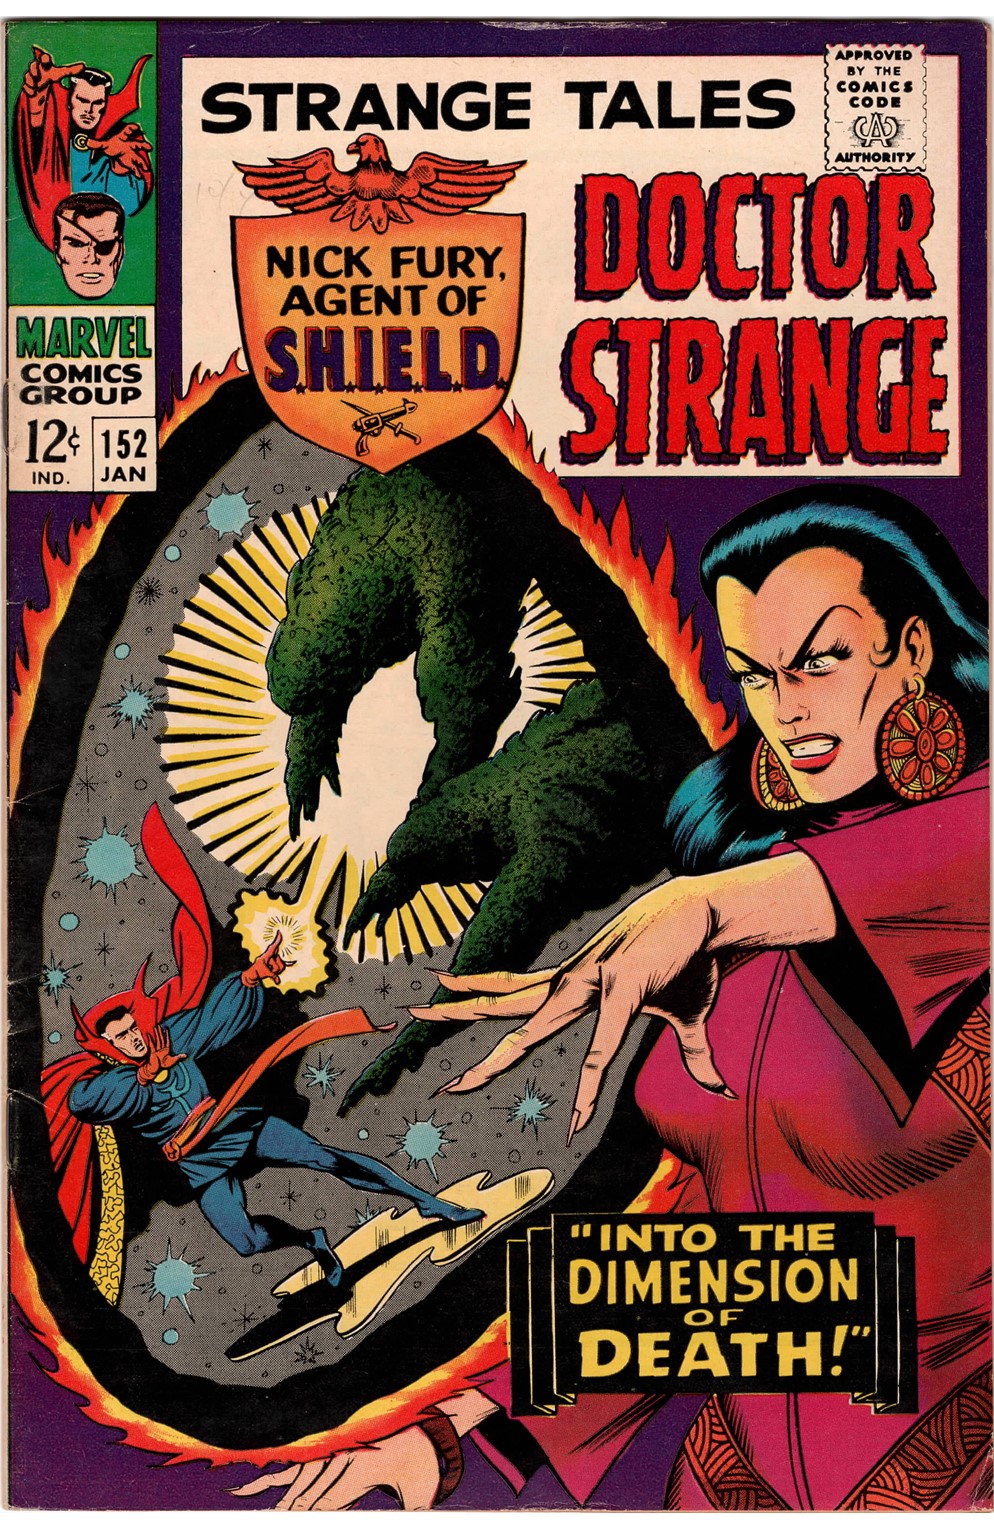 Strange Tales (Vol 1) #152